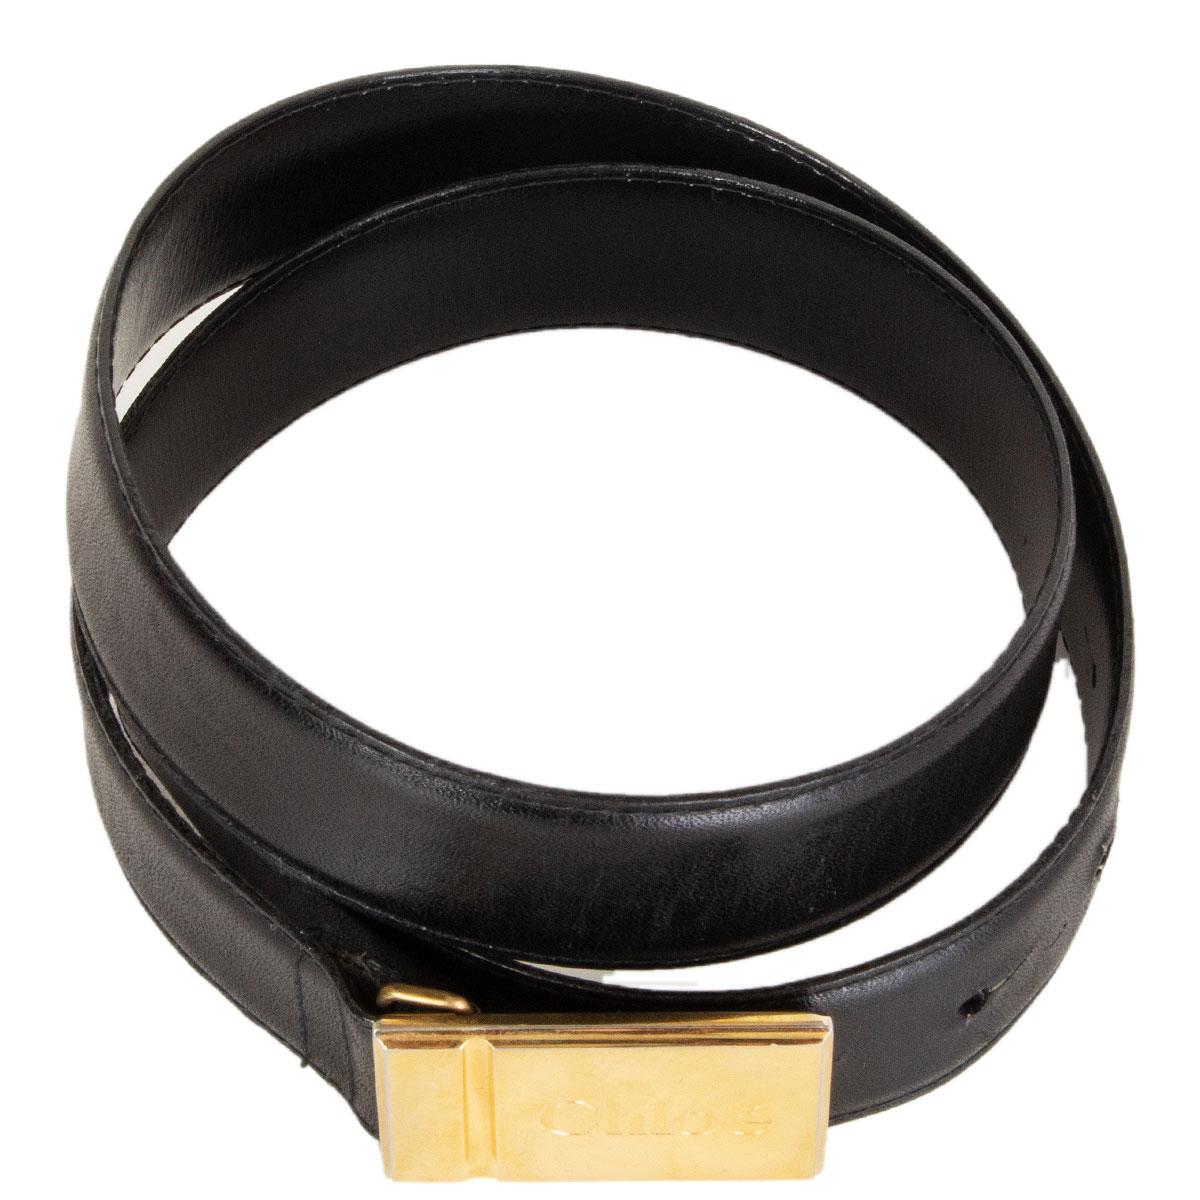 100% authentischer schwarzer Ledergürtel von Chloé mit goldfarbener Schnalle mit Logoprägung. Hat mit einigen Kratzern auf der Schnalle getragen worden. Insgesamt in sehr gutem Zustand. 

Tag Größe 70
Breite 2,8 cm (1,1 Zoll)
Passend für 64,5 cm